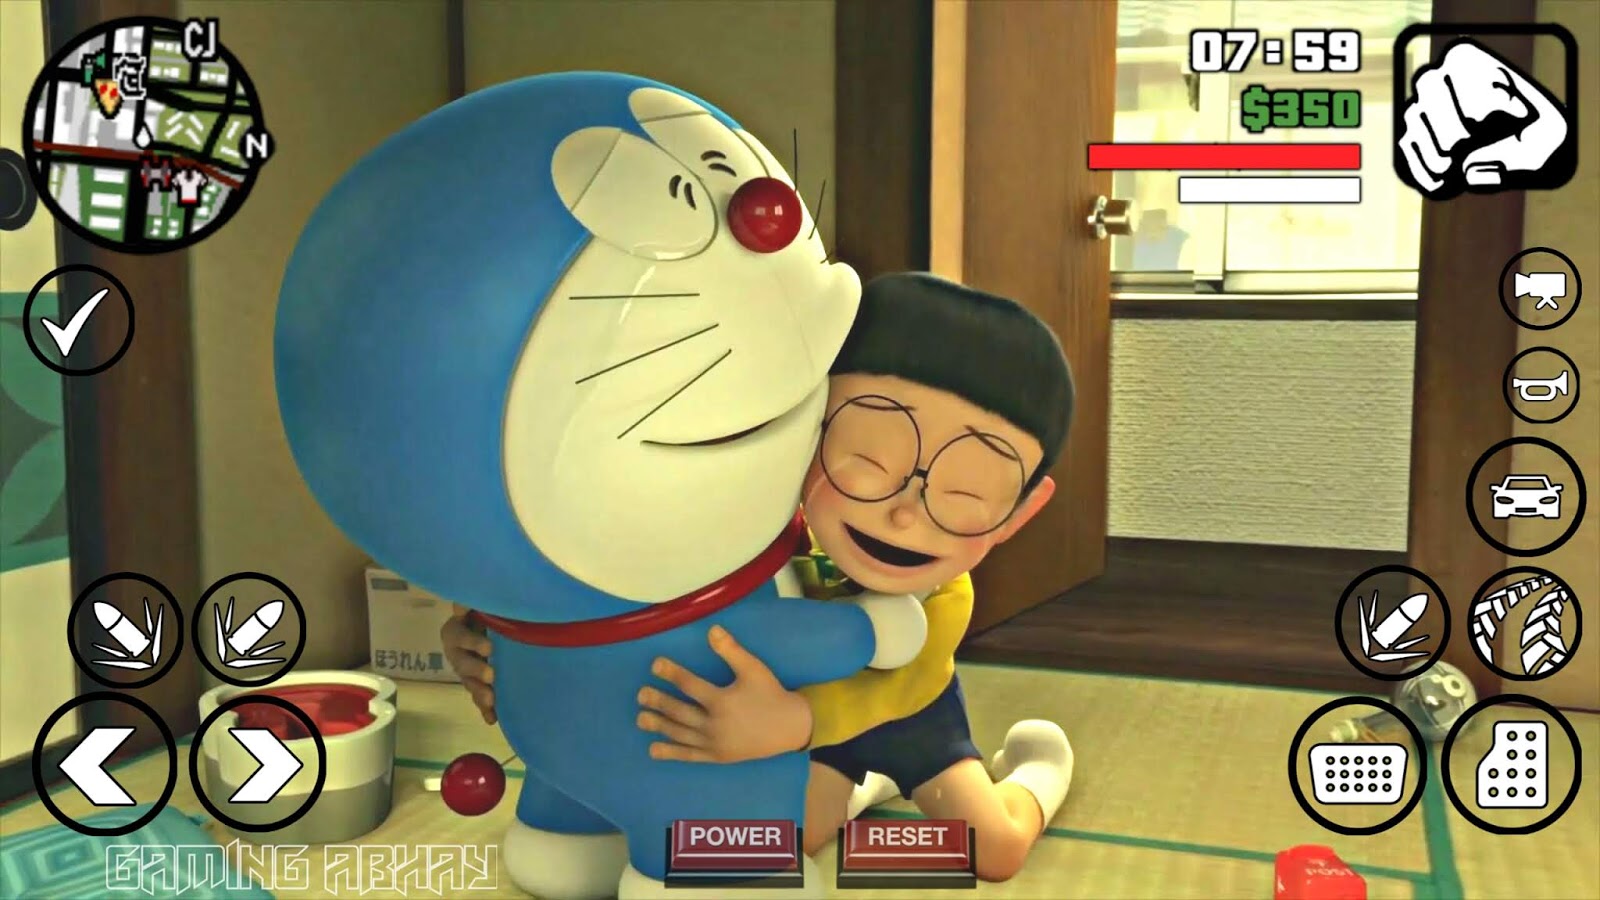 20mb] Gta Sa Doraemon Mod With House For Android - Gta Sa Doraemon , HD Wallpaper & Backgrounds